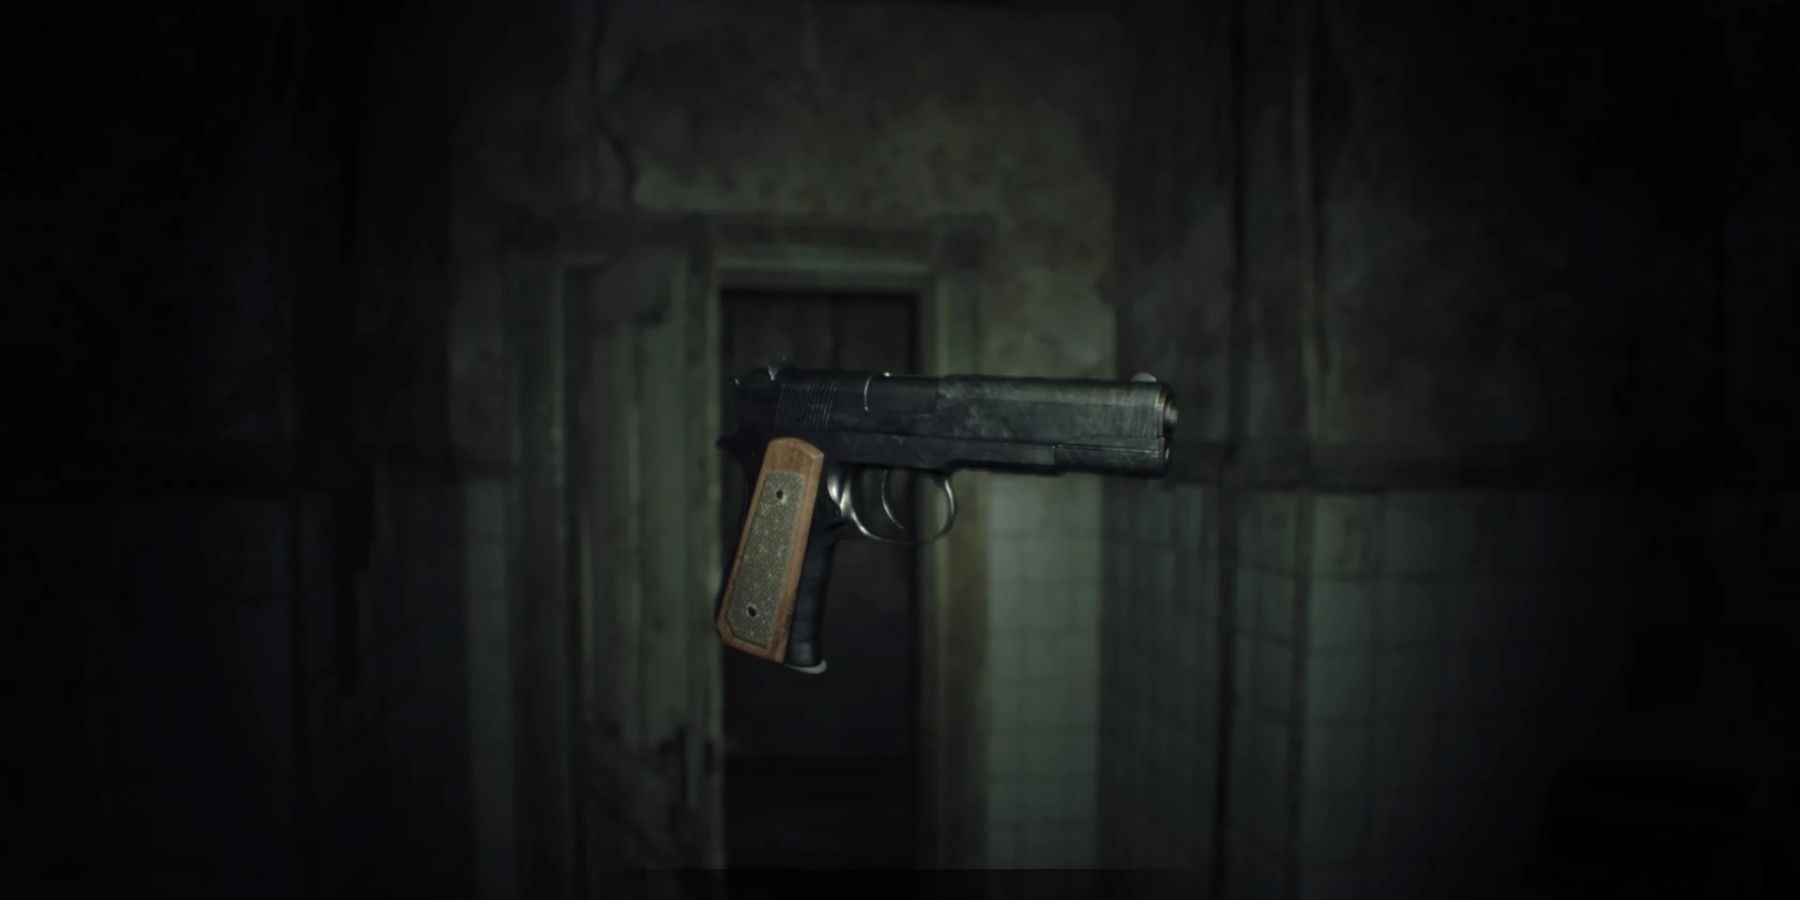 Resident_Evil_7_Teaser_Beginning_Hour_M19_Handgun_examine